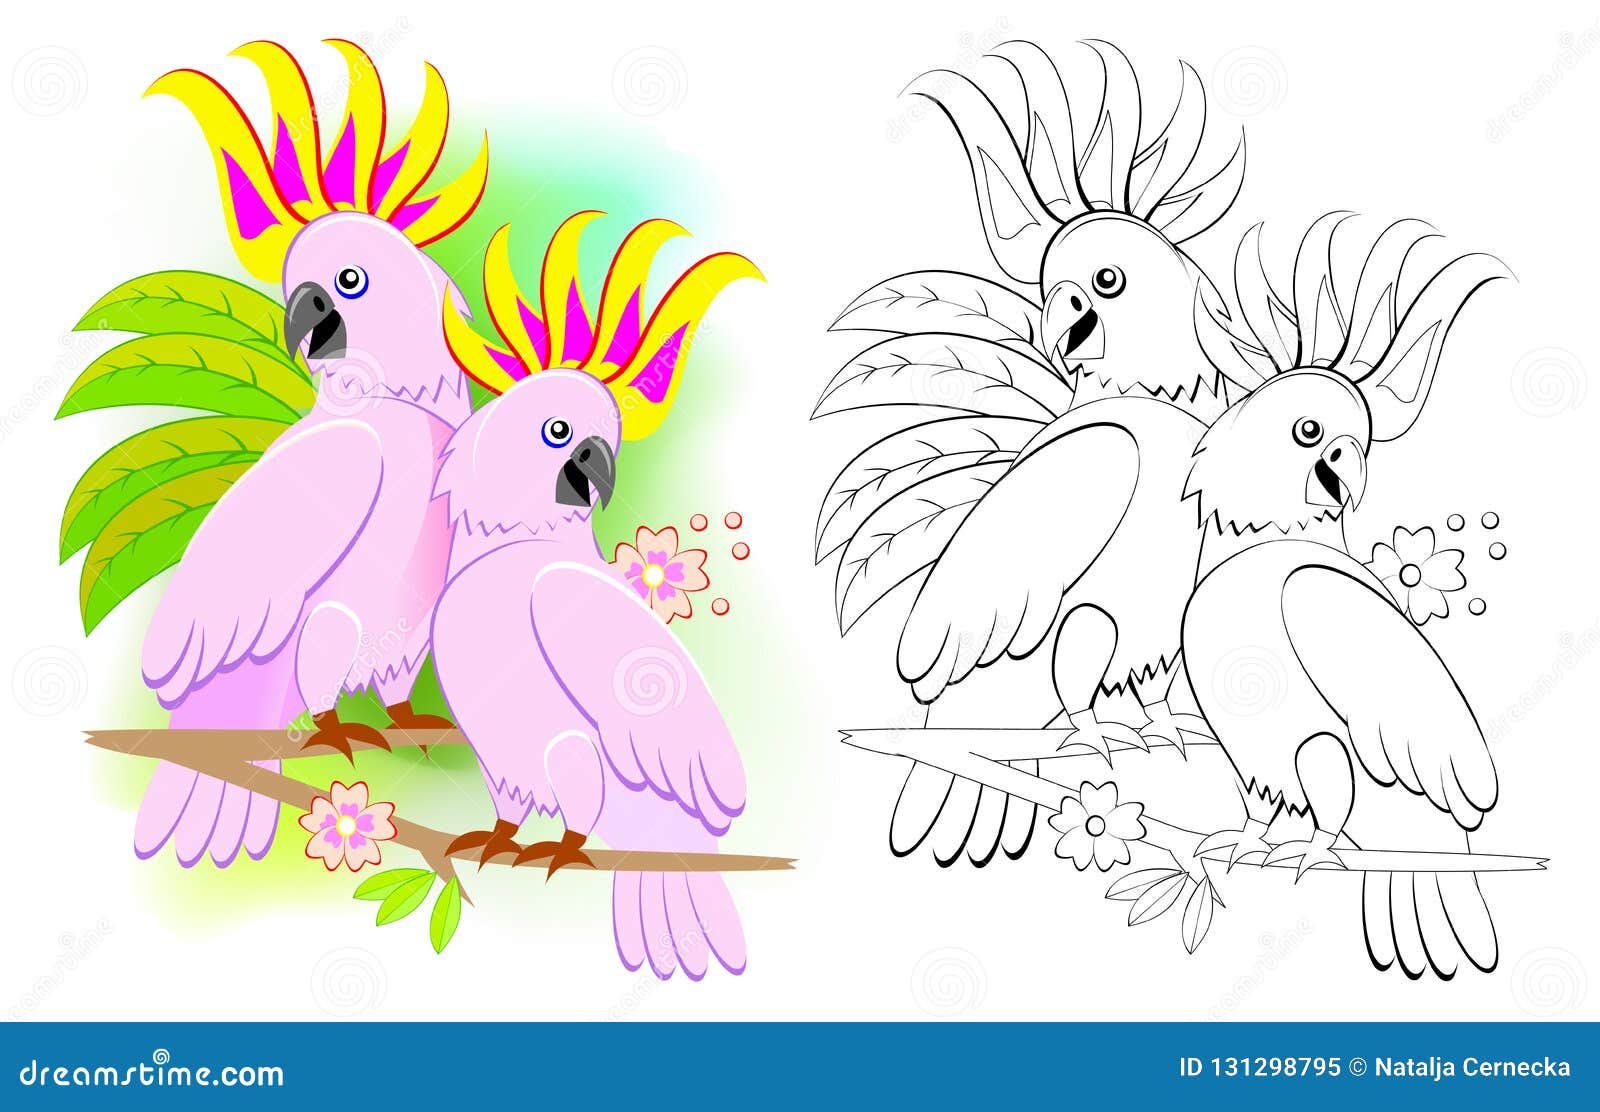 Desenhos para colorir de amor de arara - Desenhos para colorir de arara -  Desenhos para colorir para crianças e adultos